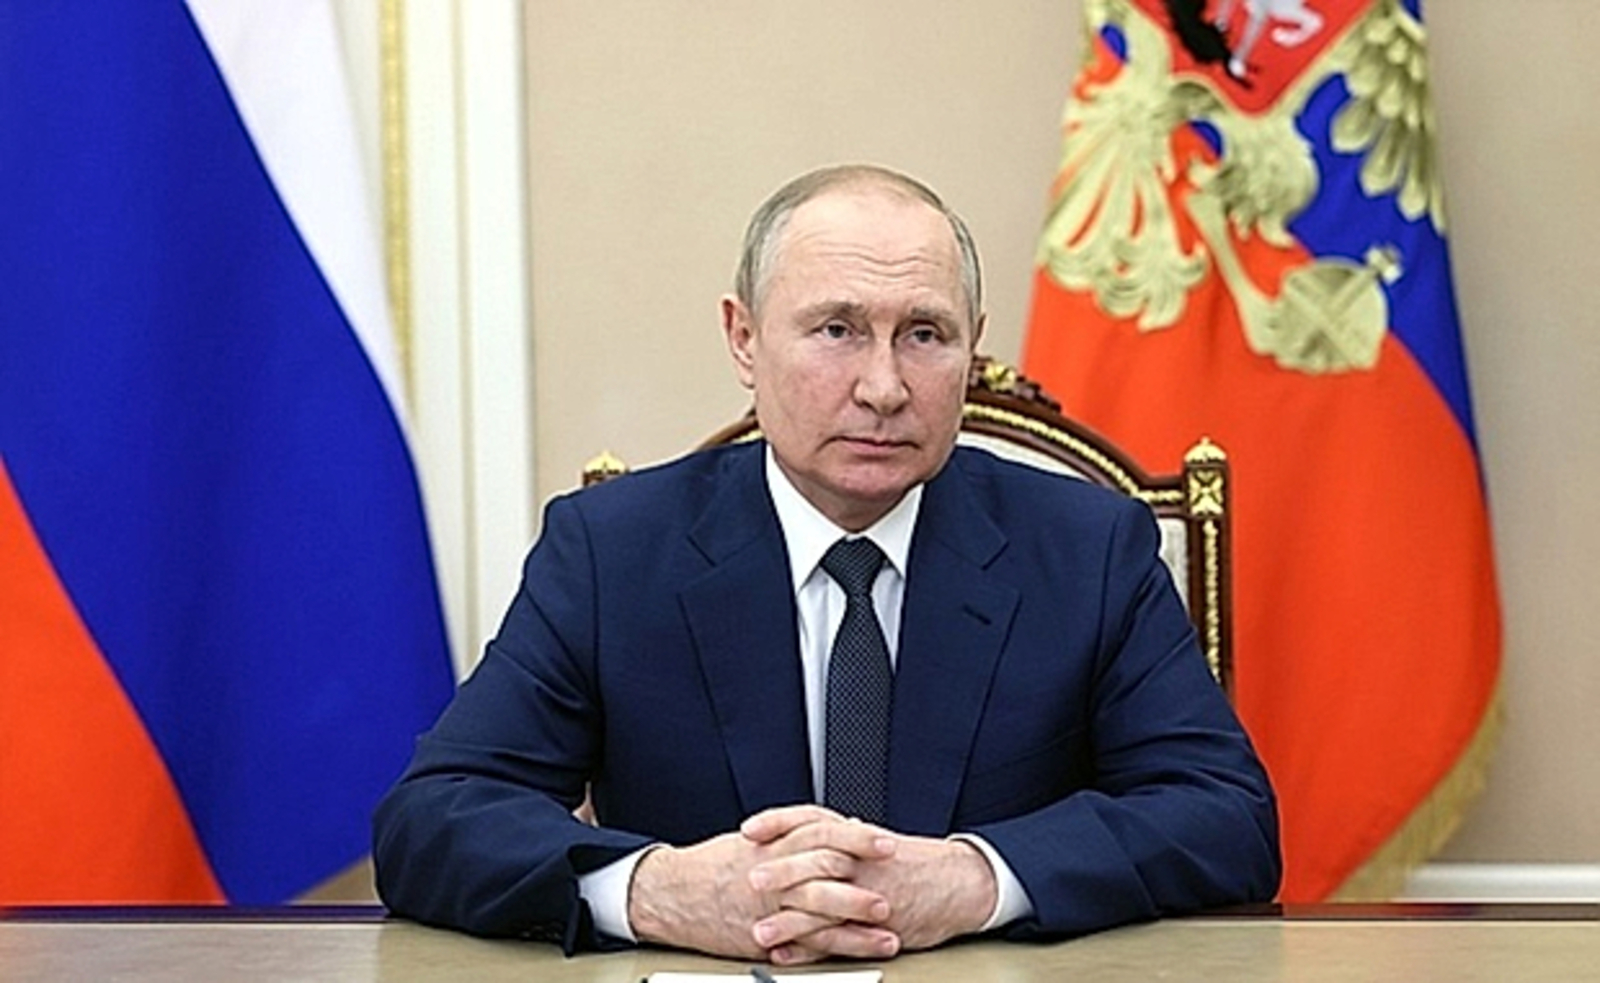 Путин үҙ теләге менән махсус хәрби операцияла ҡатнашыусыларҙың ғүмерен һәм һаулығын страховкалау тураһында указға ҡул ҡуйҙы